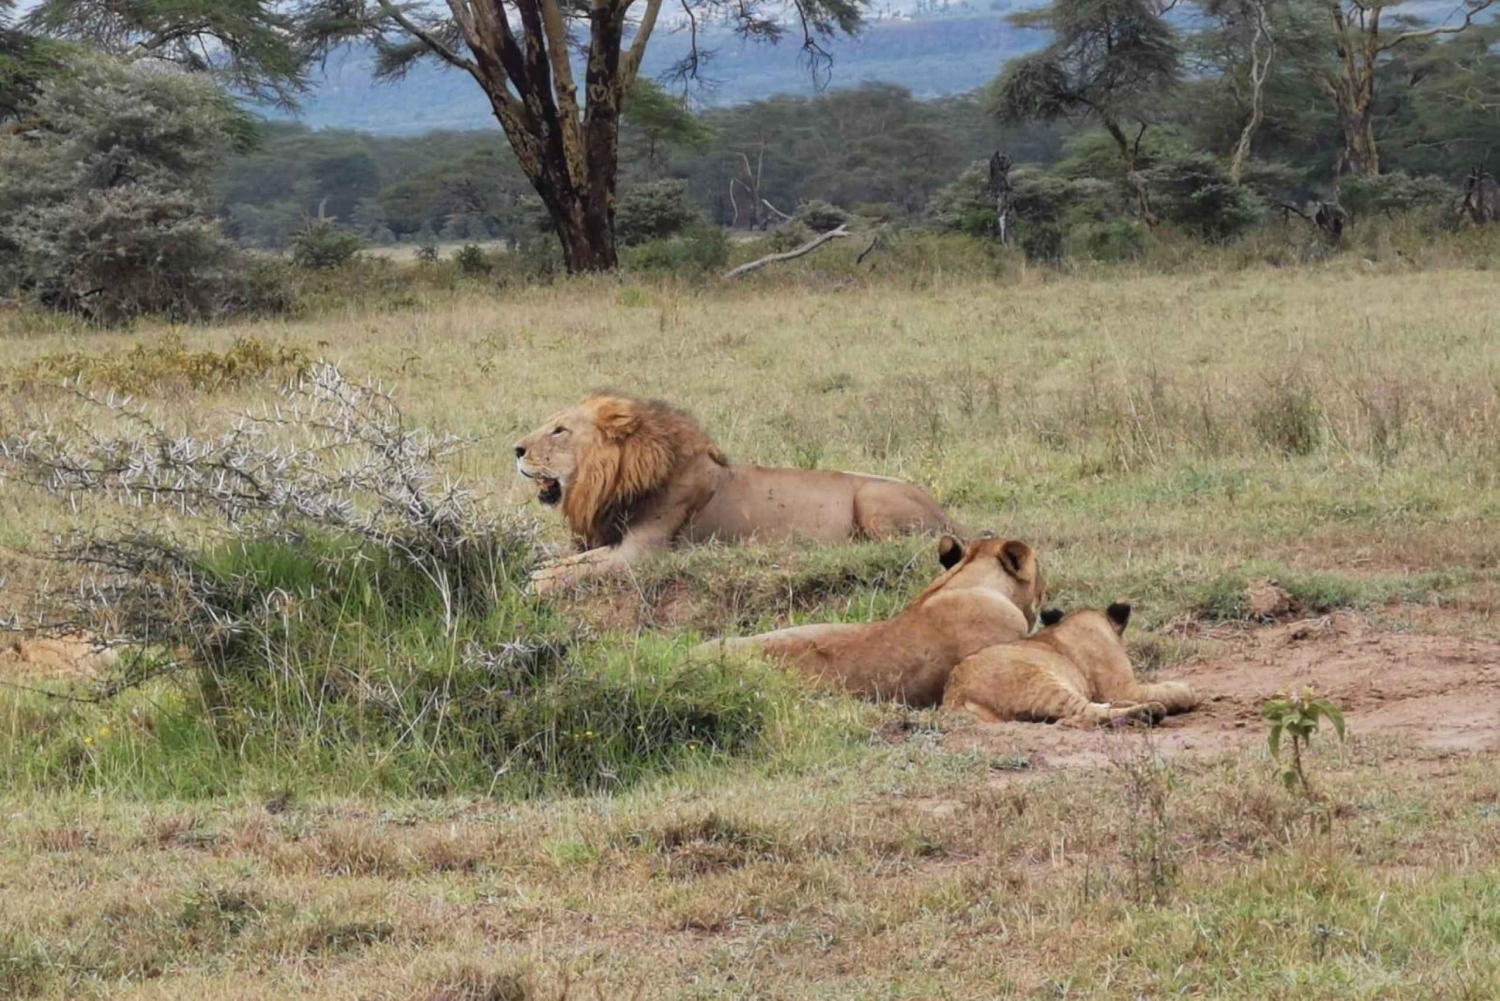 Amboselin kansallispuiston päiväretki Nairobista käsin